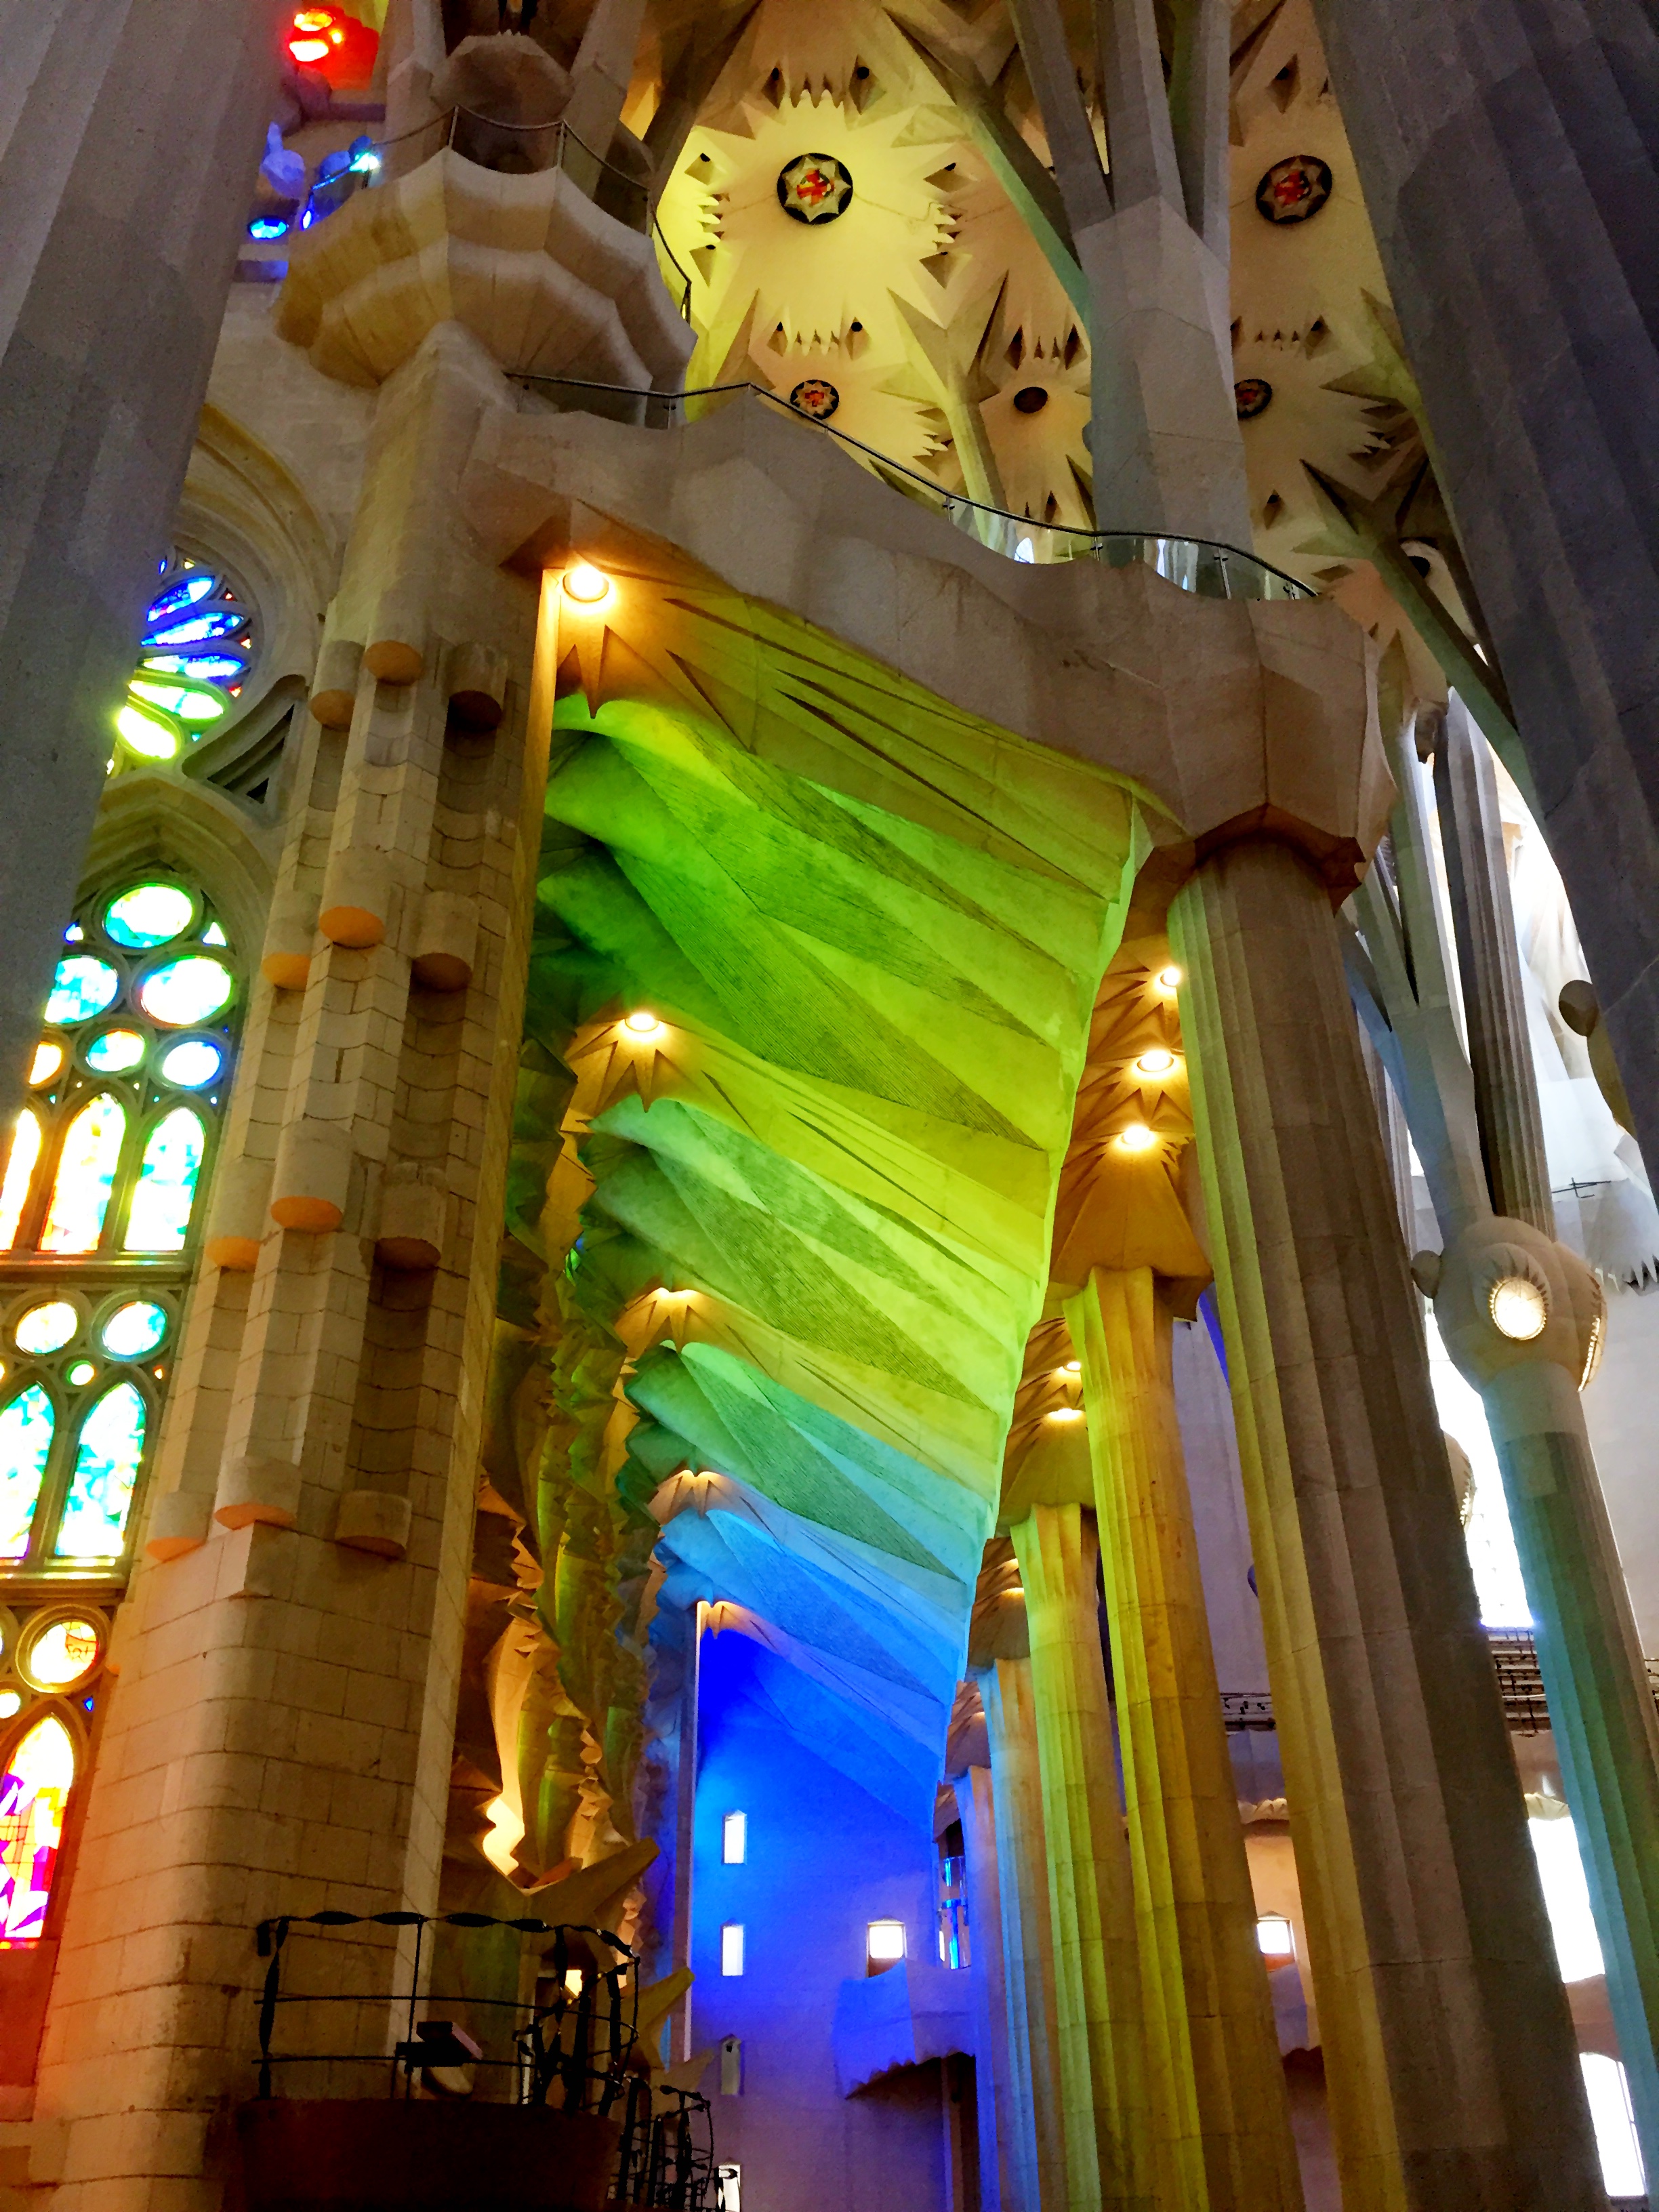 Stained glass colors in La Sagrada Familia